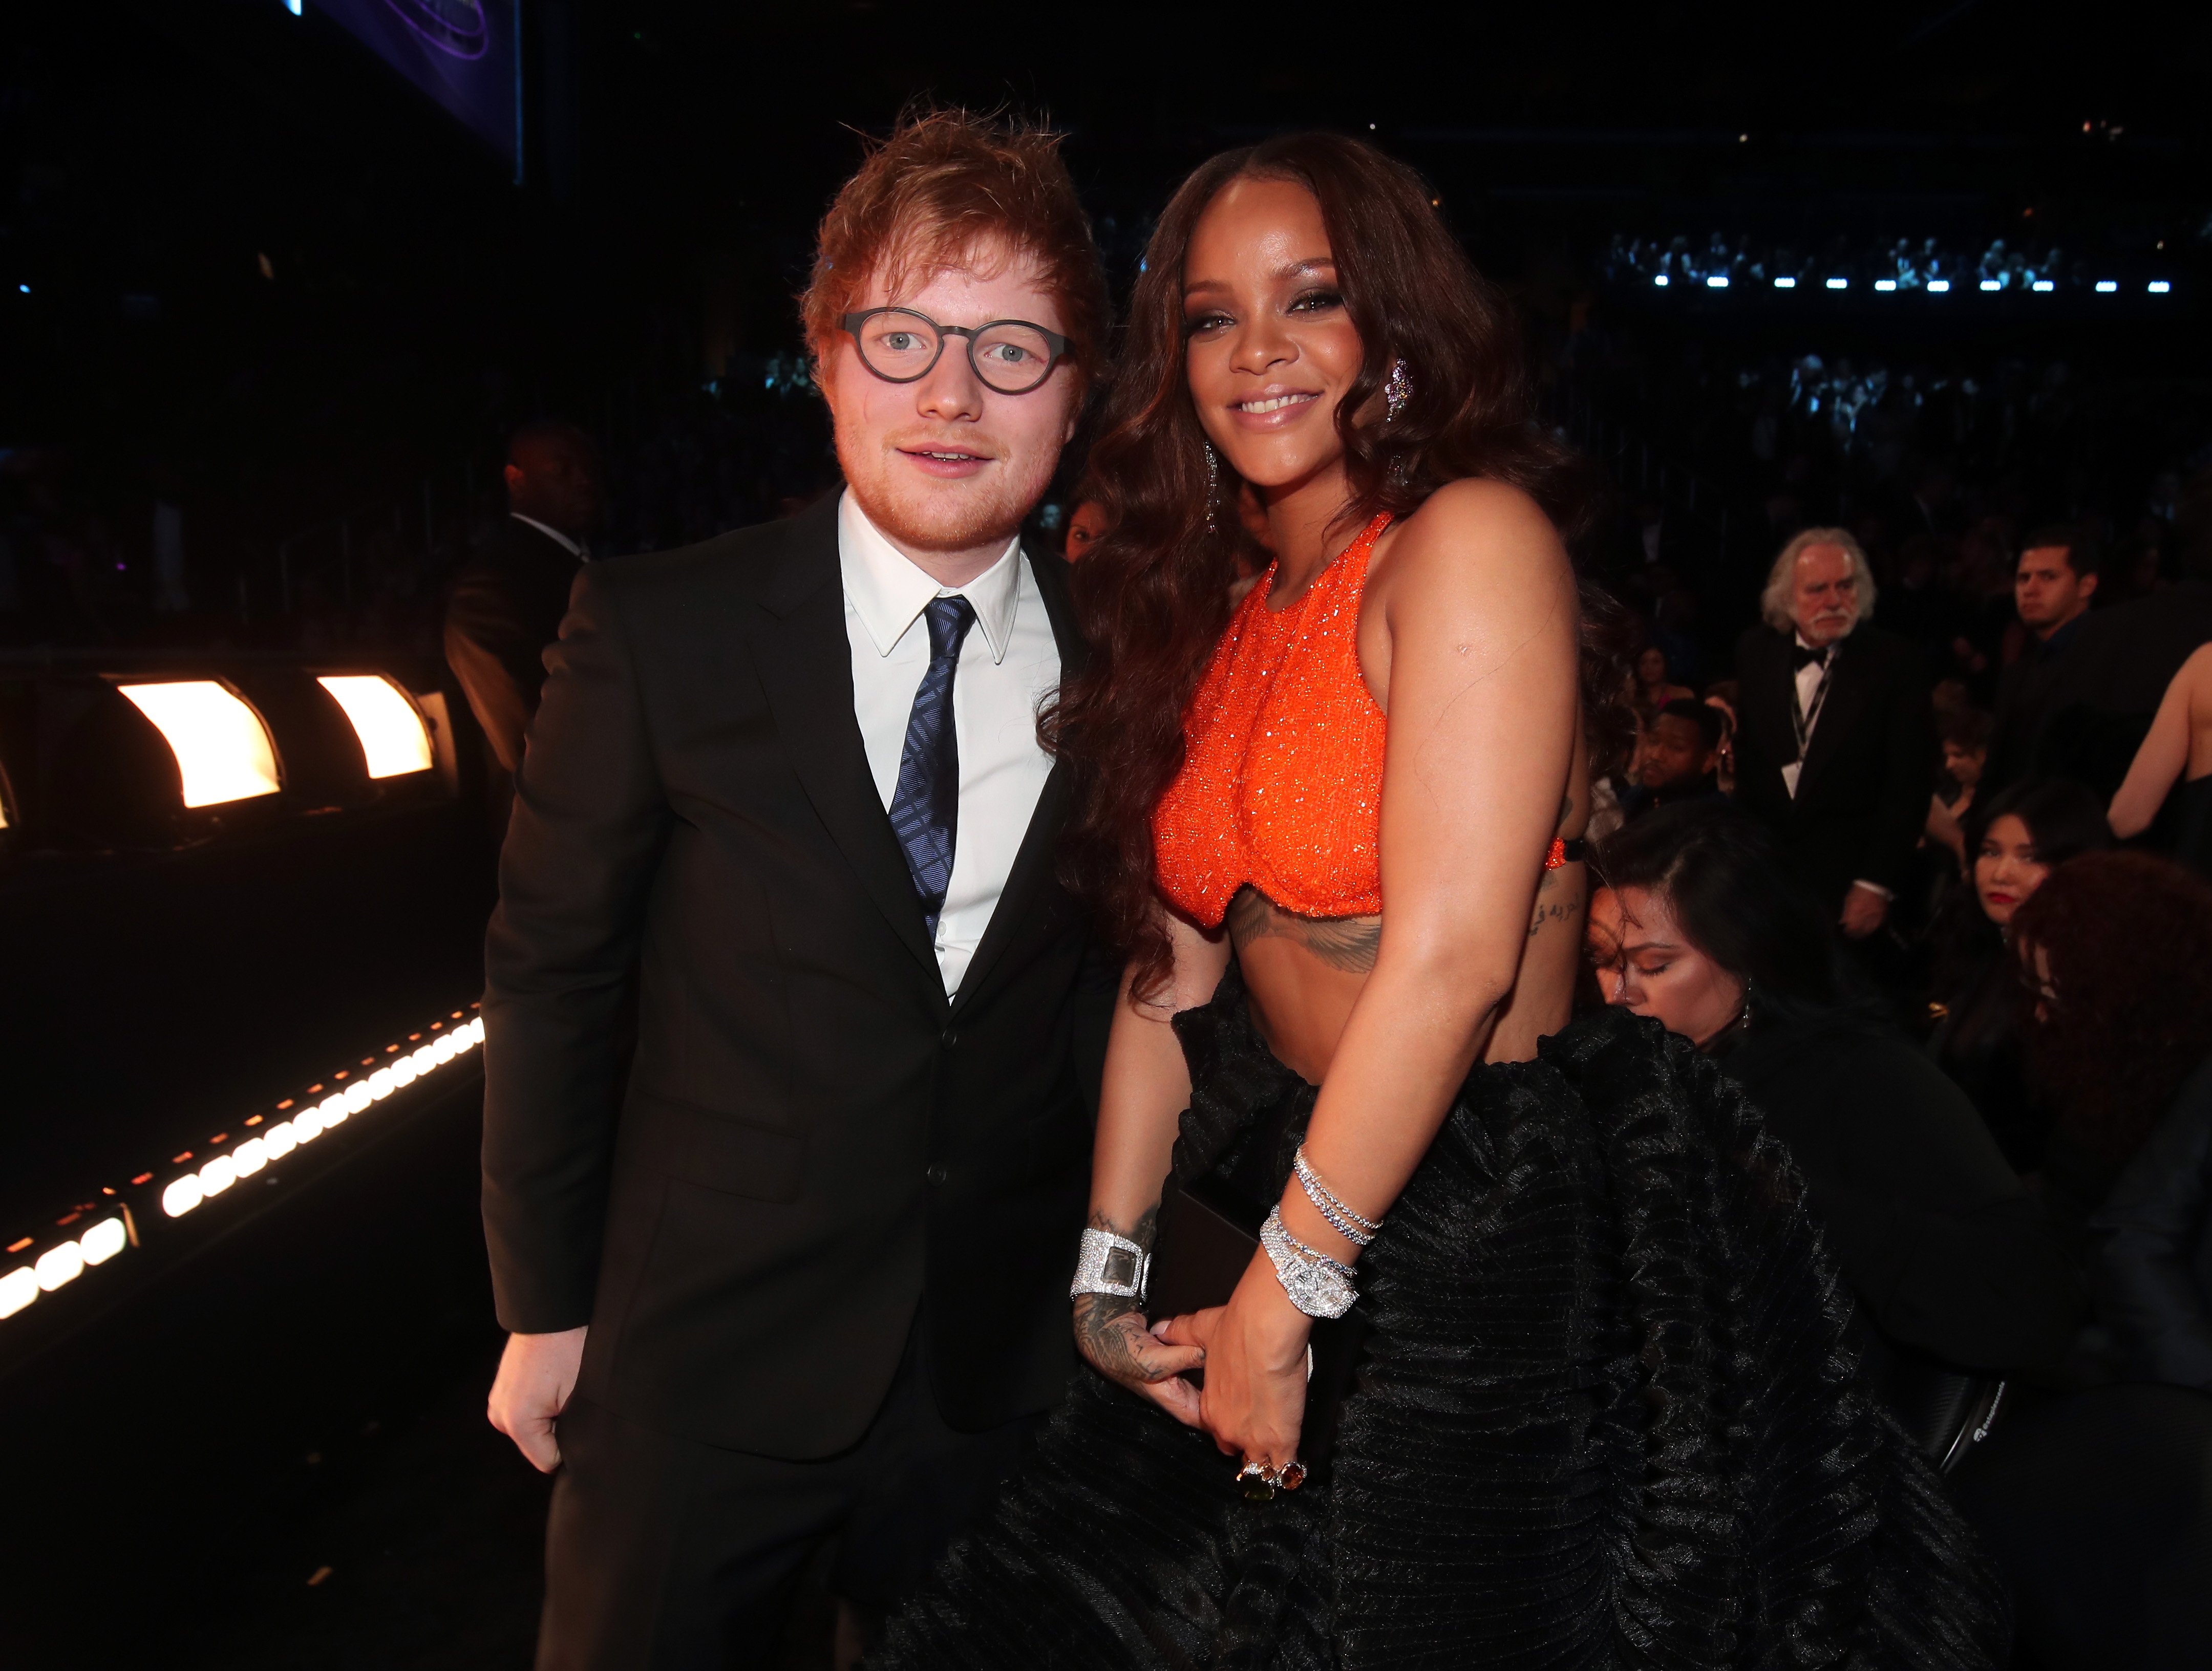 "Shape of You" era Ed Sheeran standing next to Rihanna